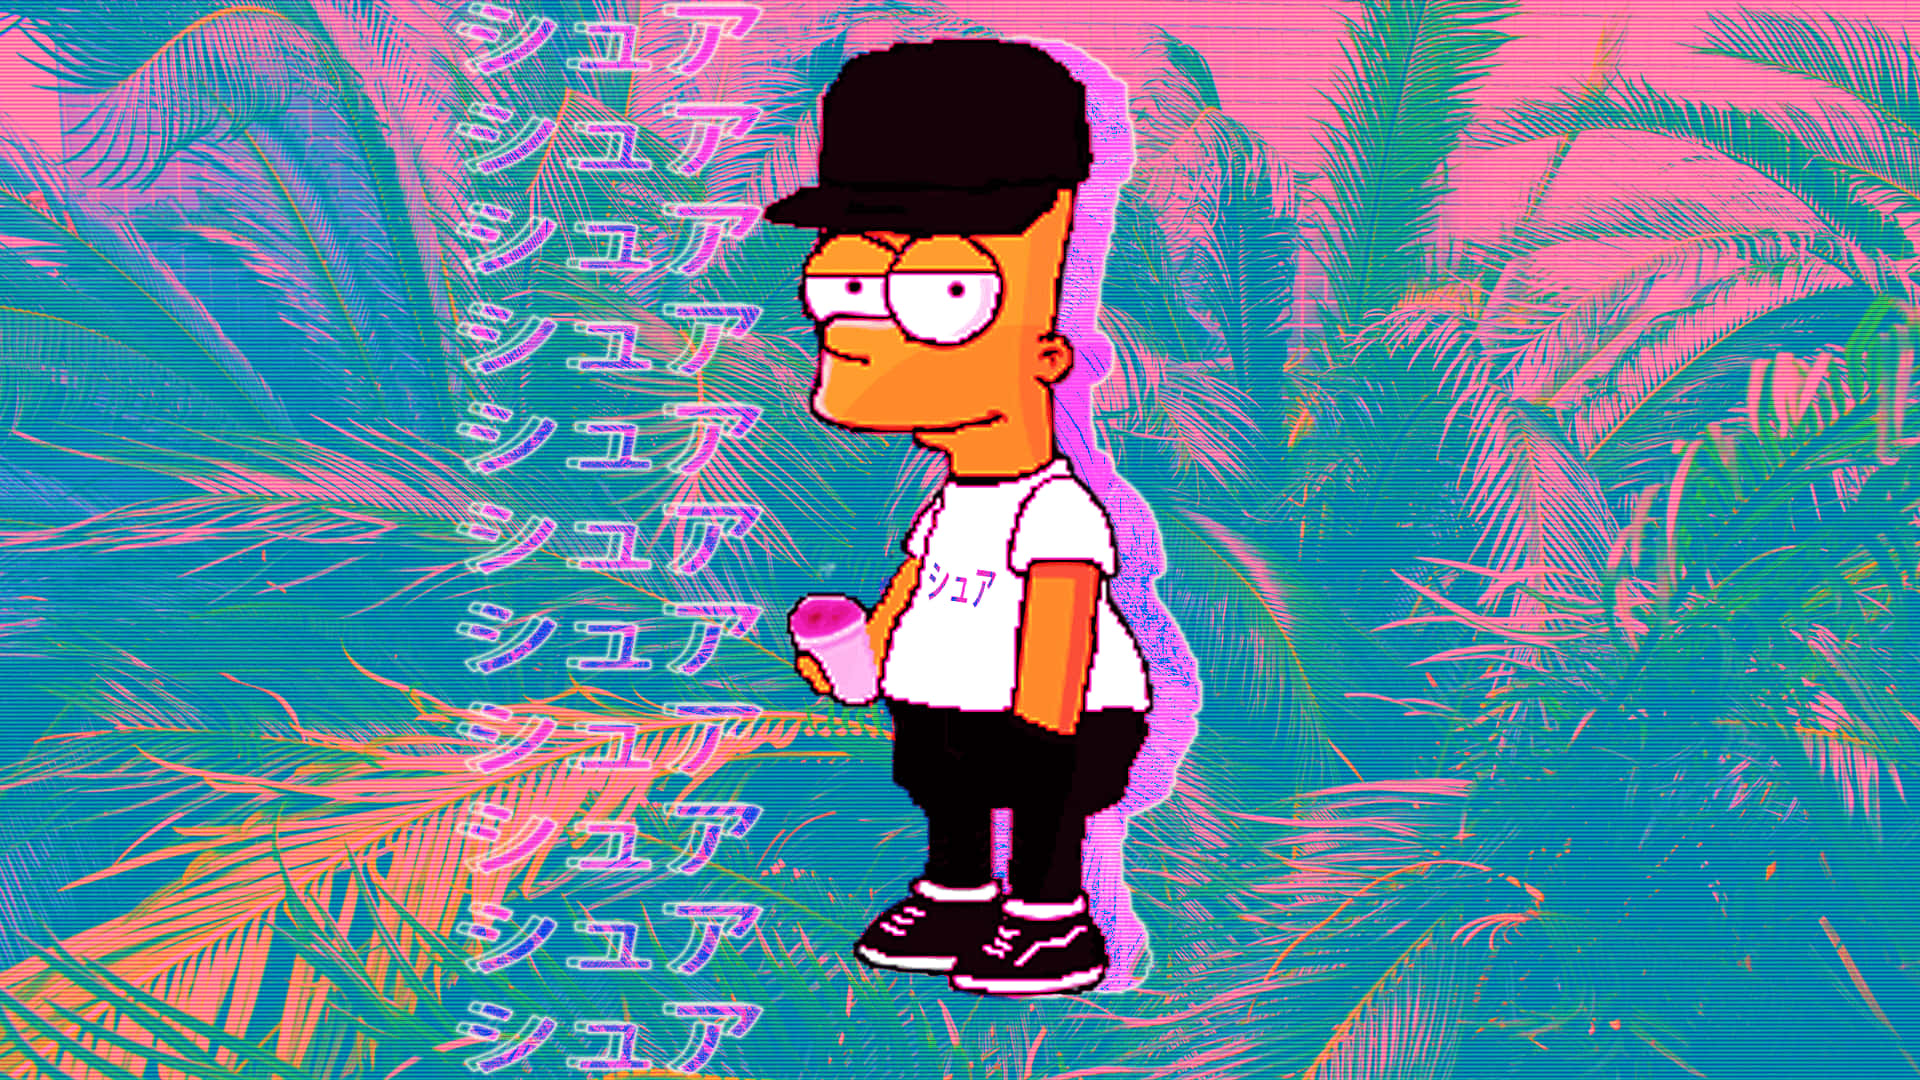 Japanese Bart Simpson Aesthetic Wallpaper